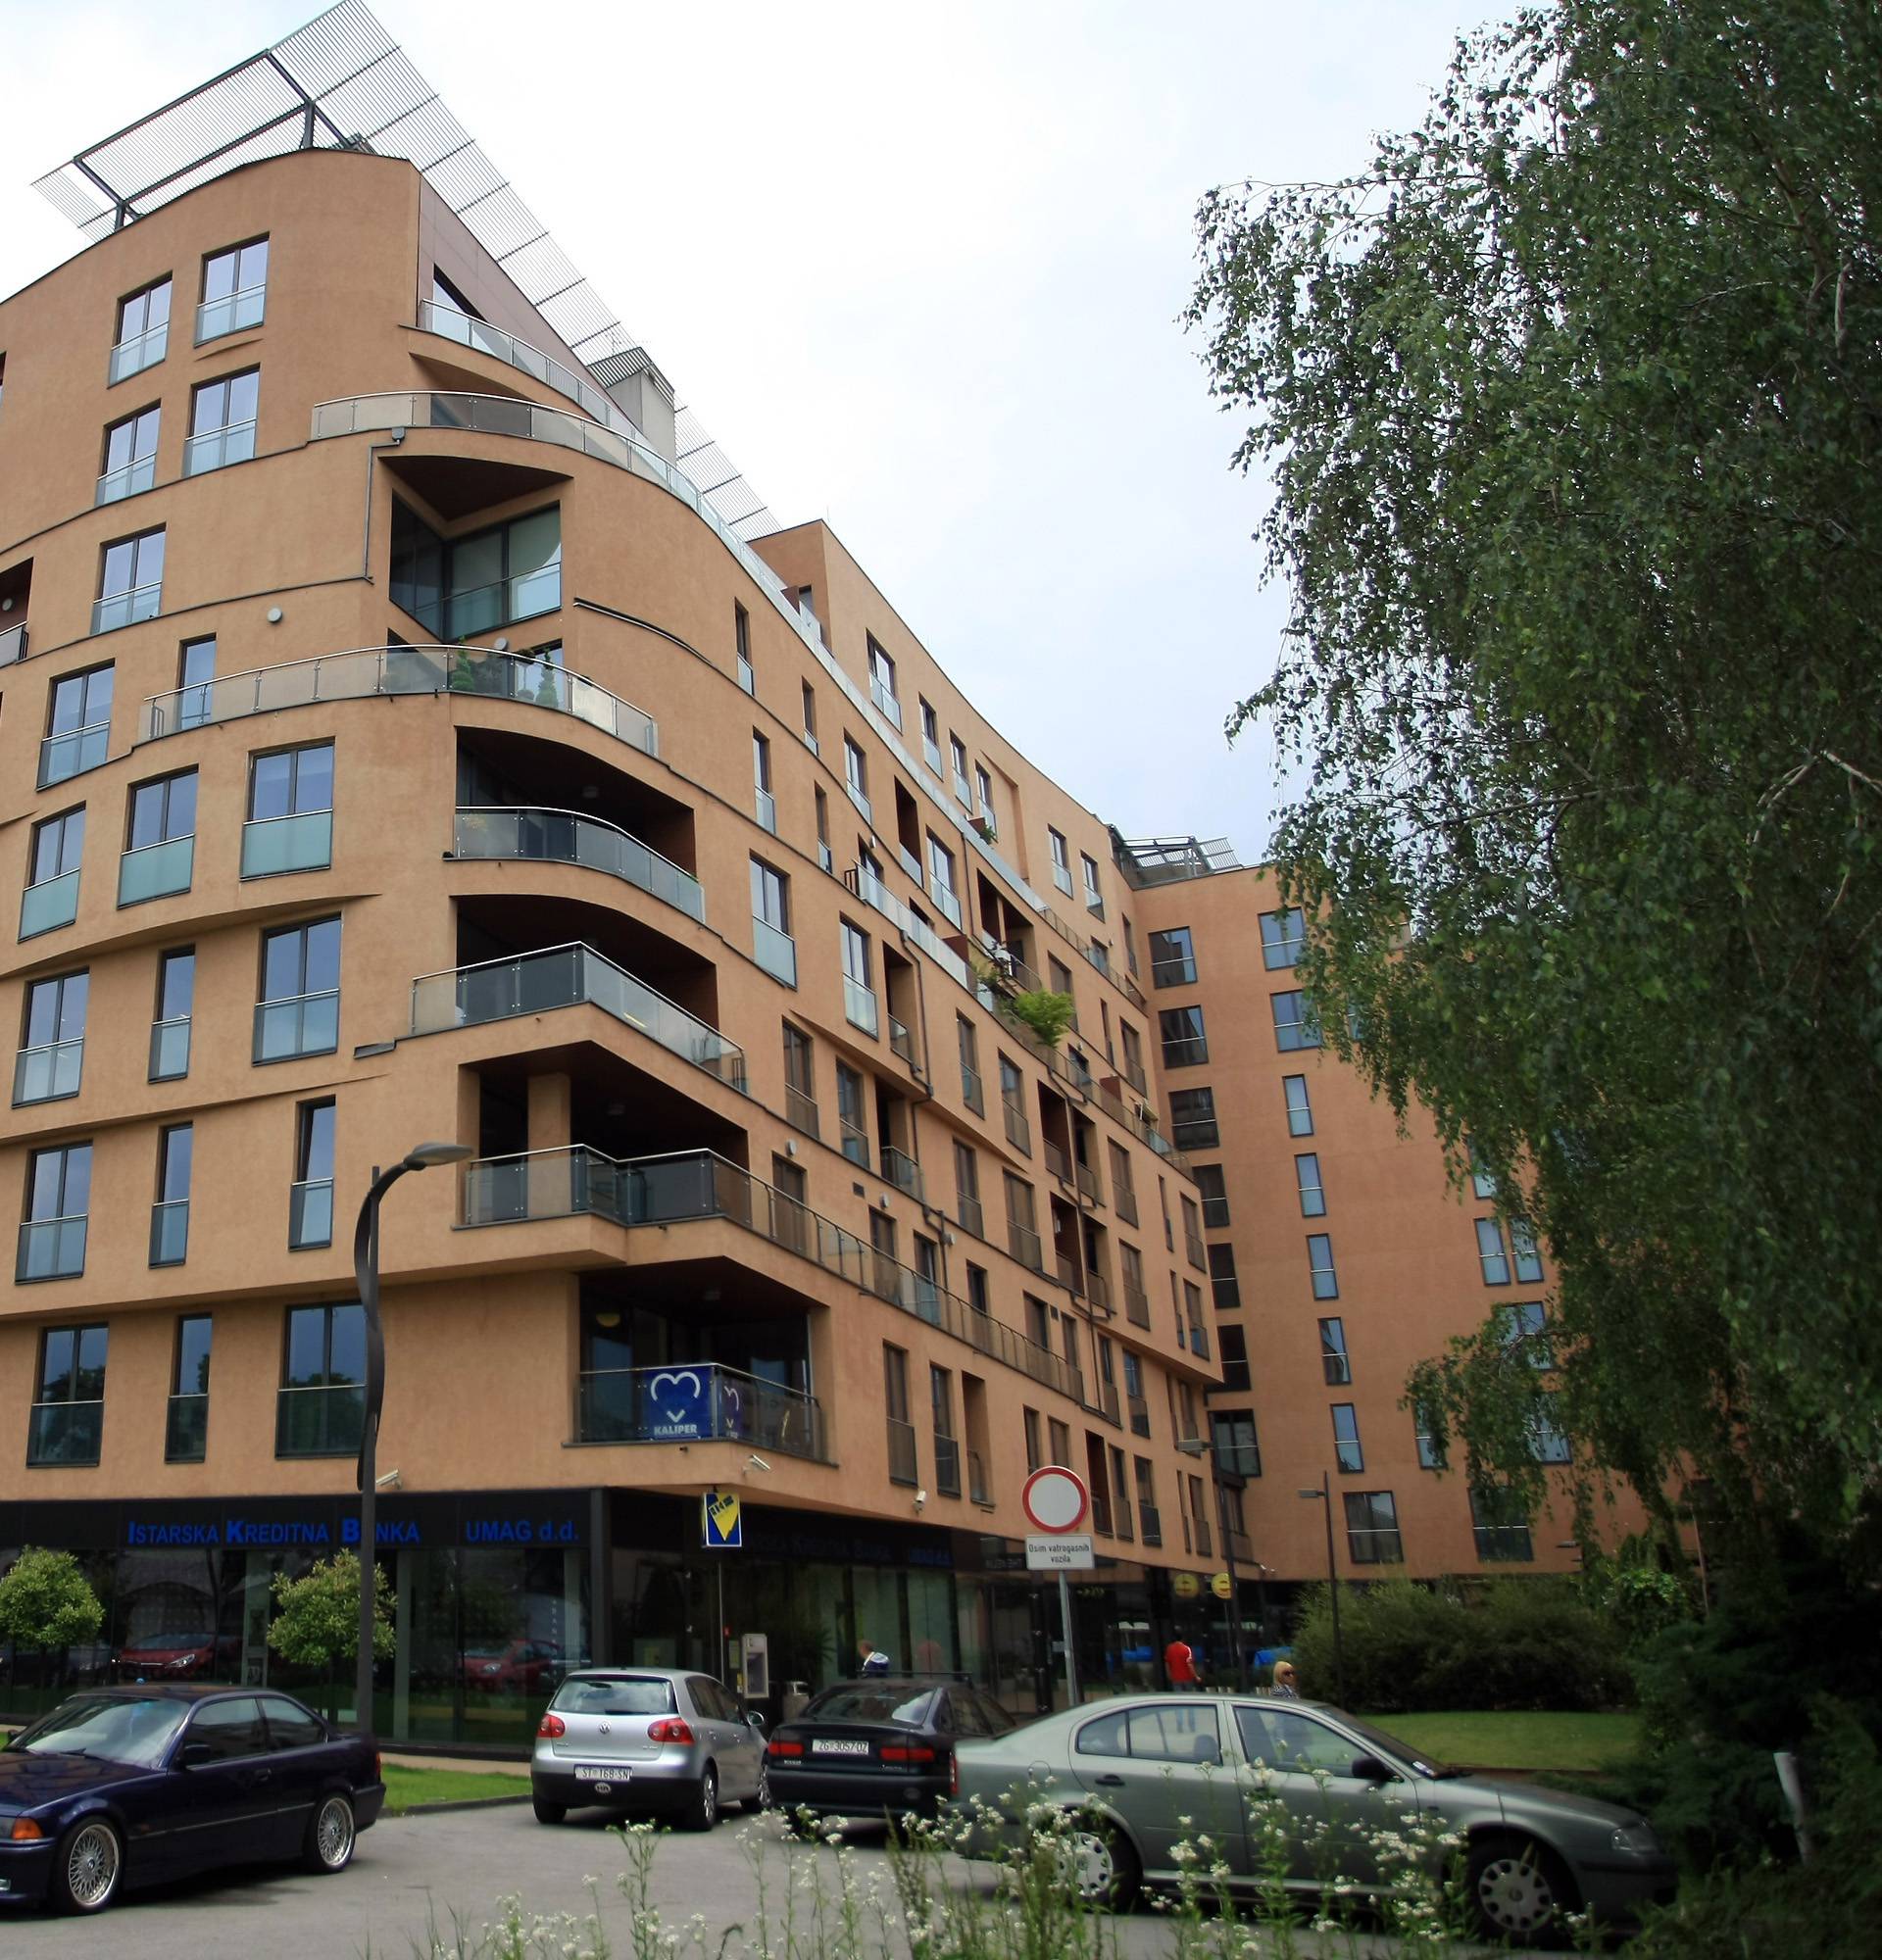 Thompson za 15 milijuna kuna prodaje penthouse u Zagrebu